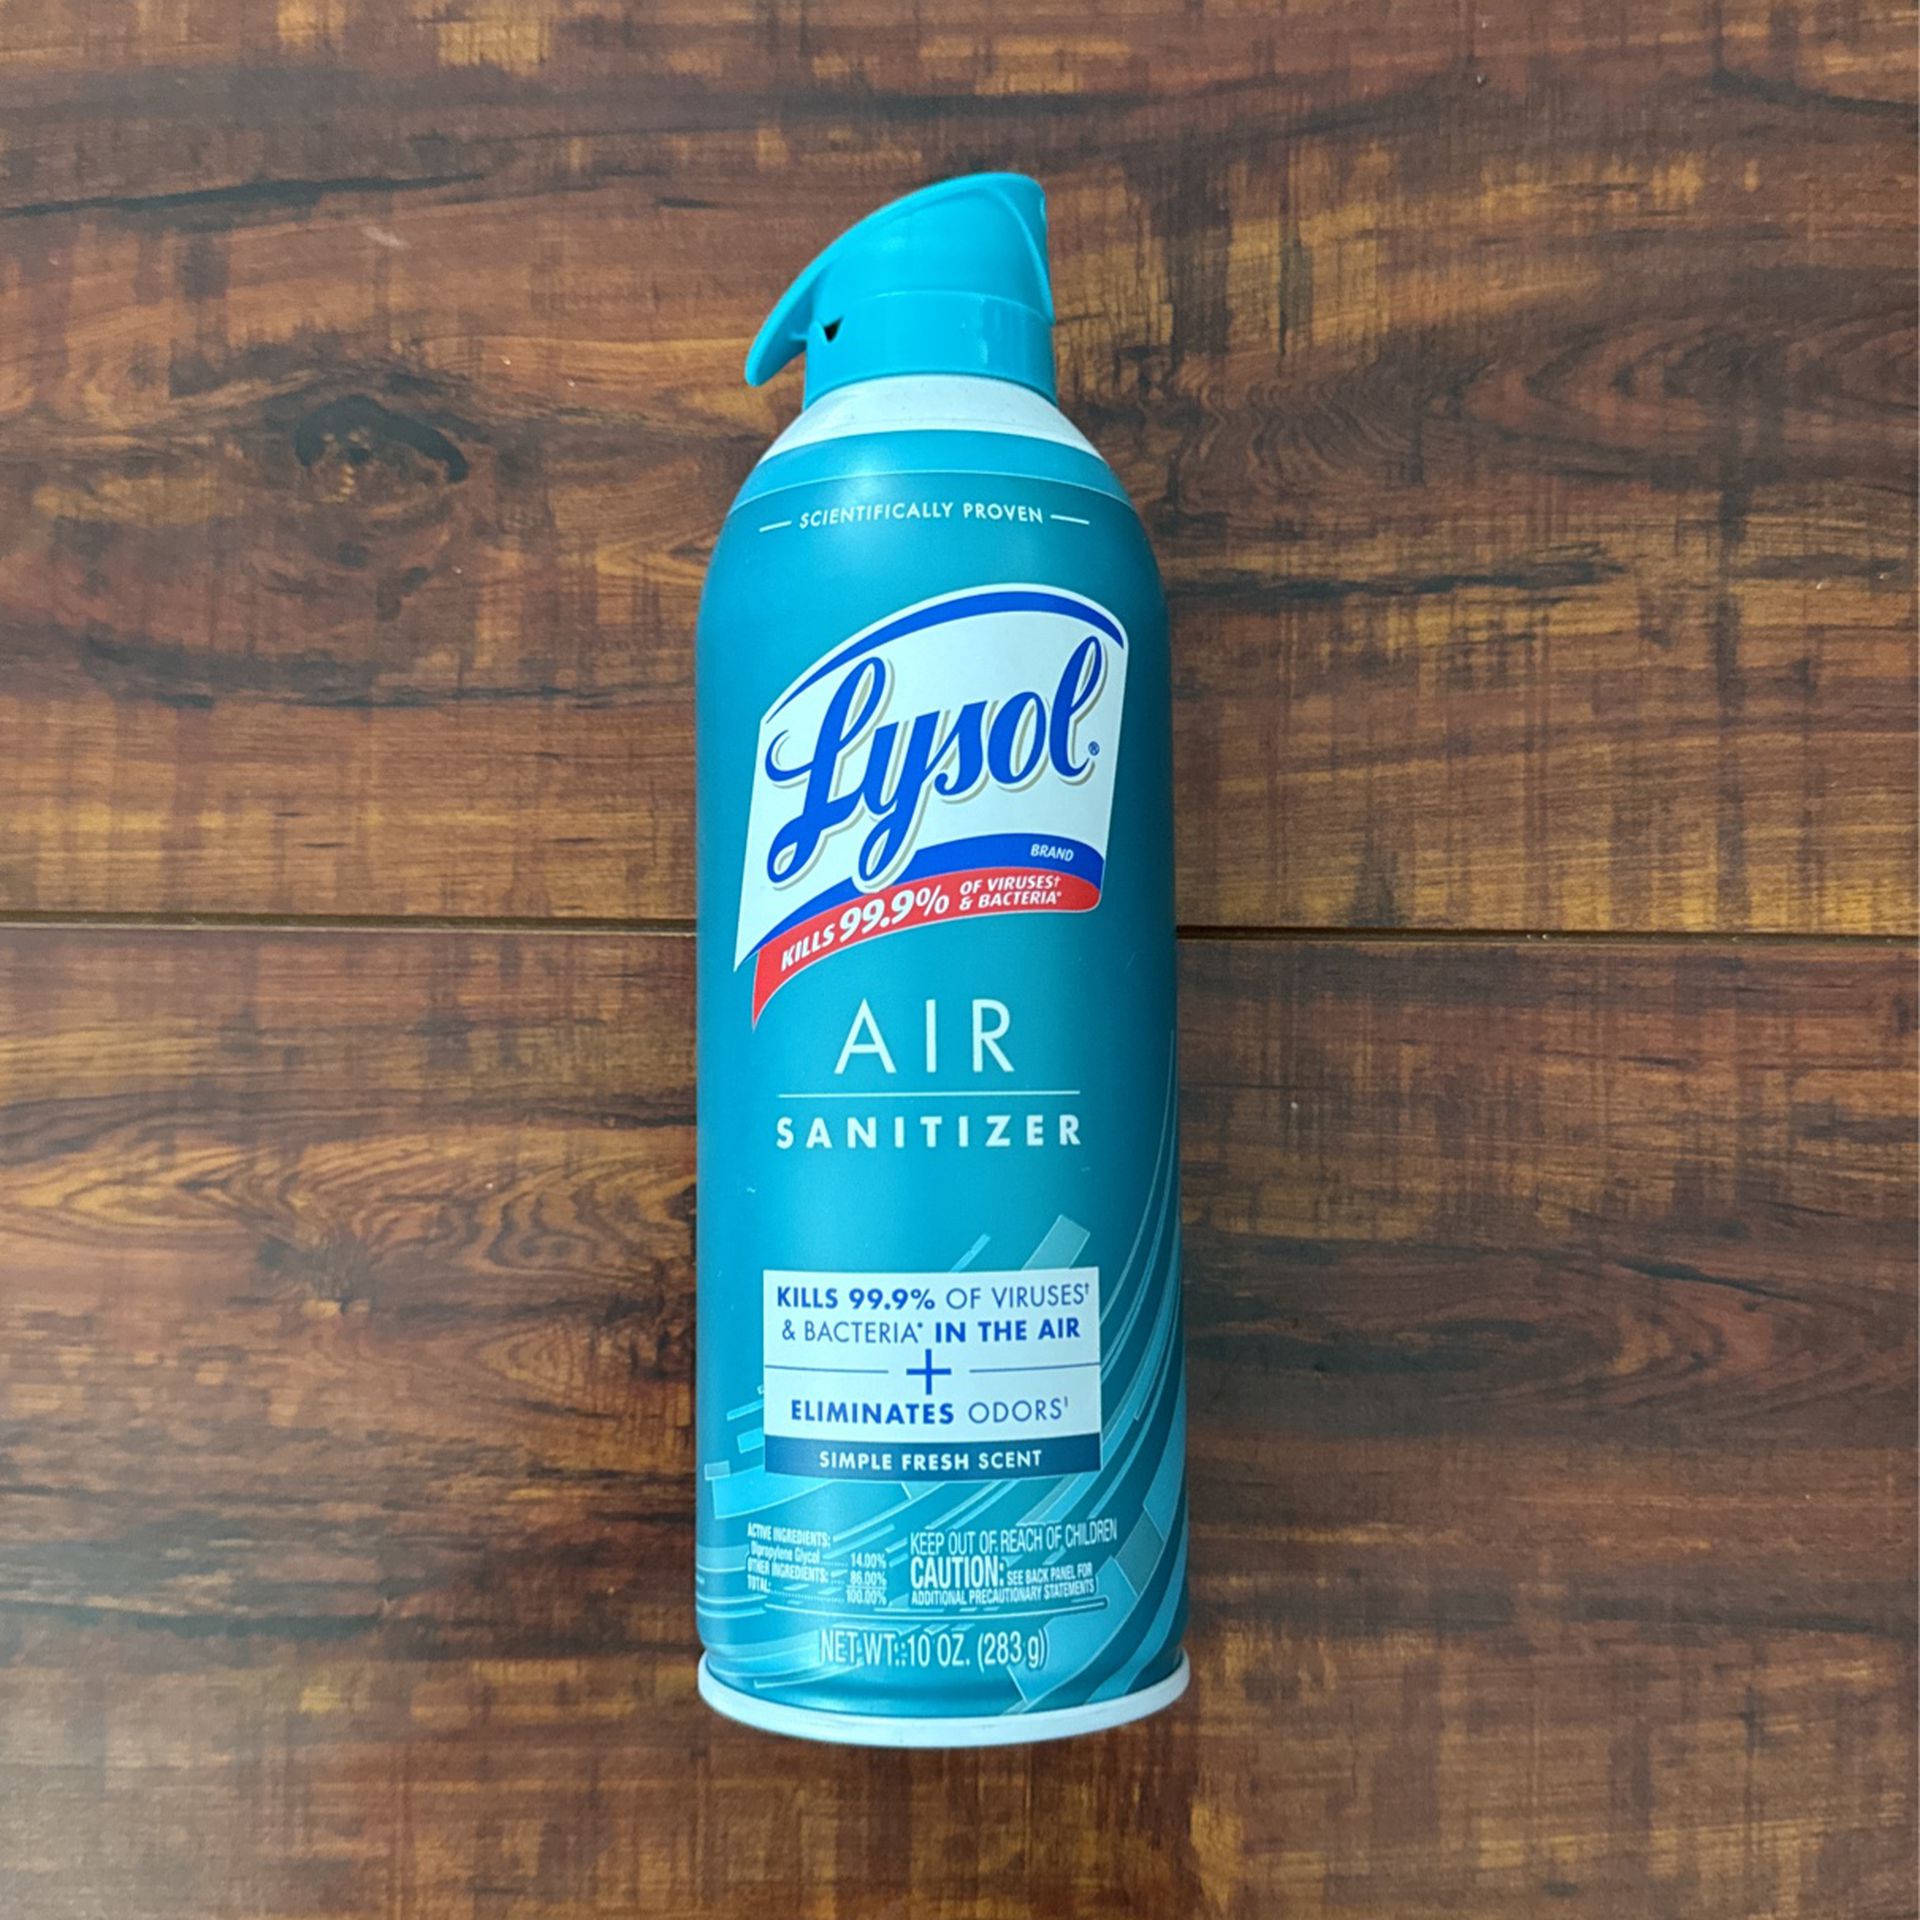 Lysol AIR Sanitizer: Simple Fresh Scent 10 oz